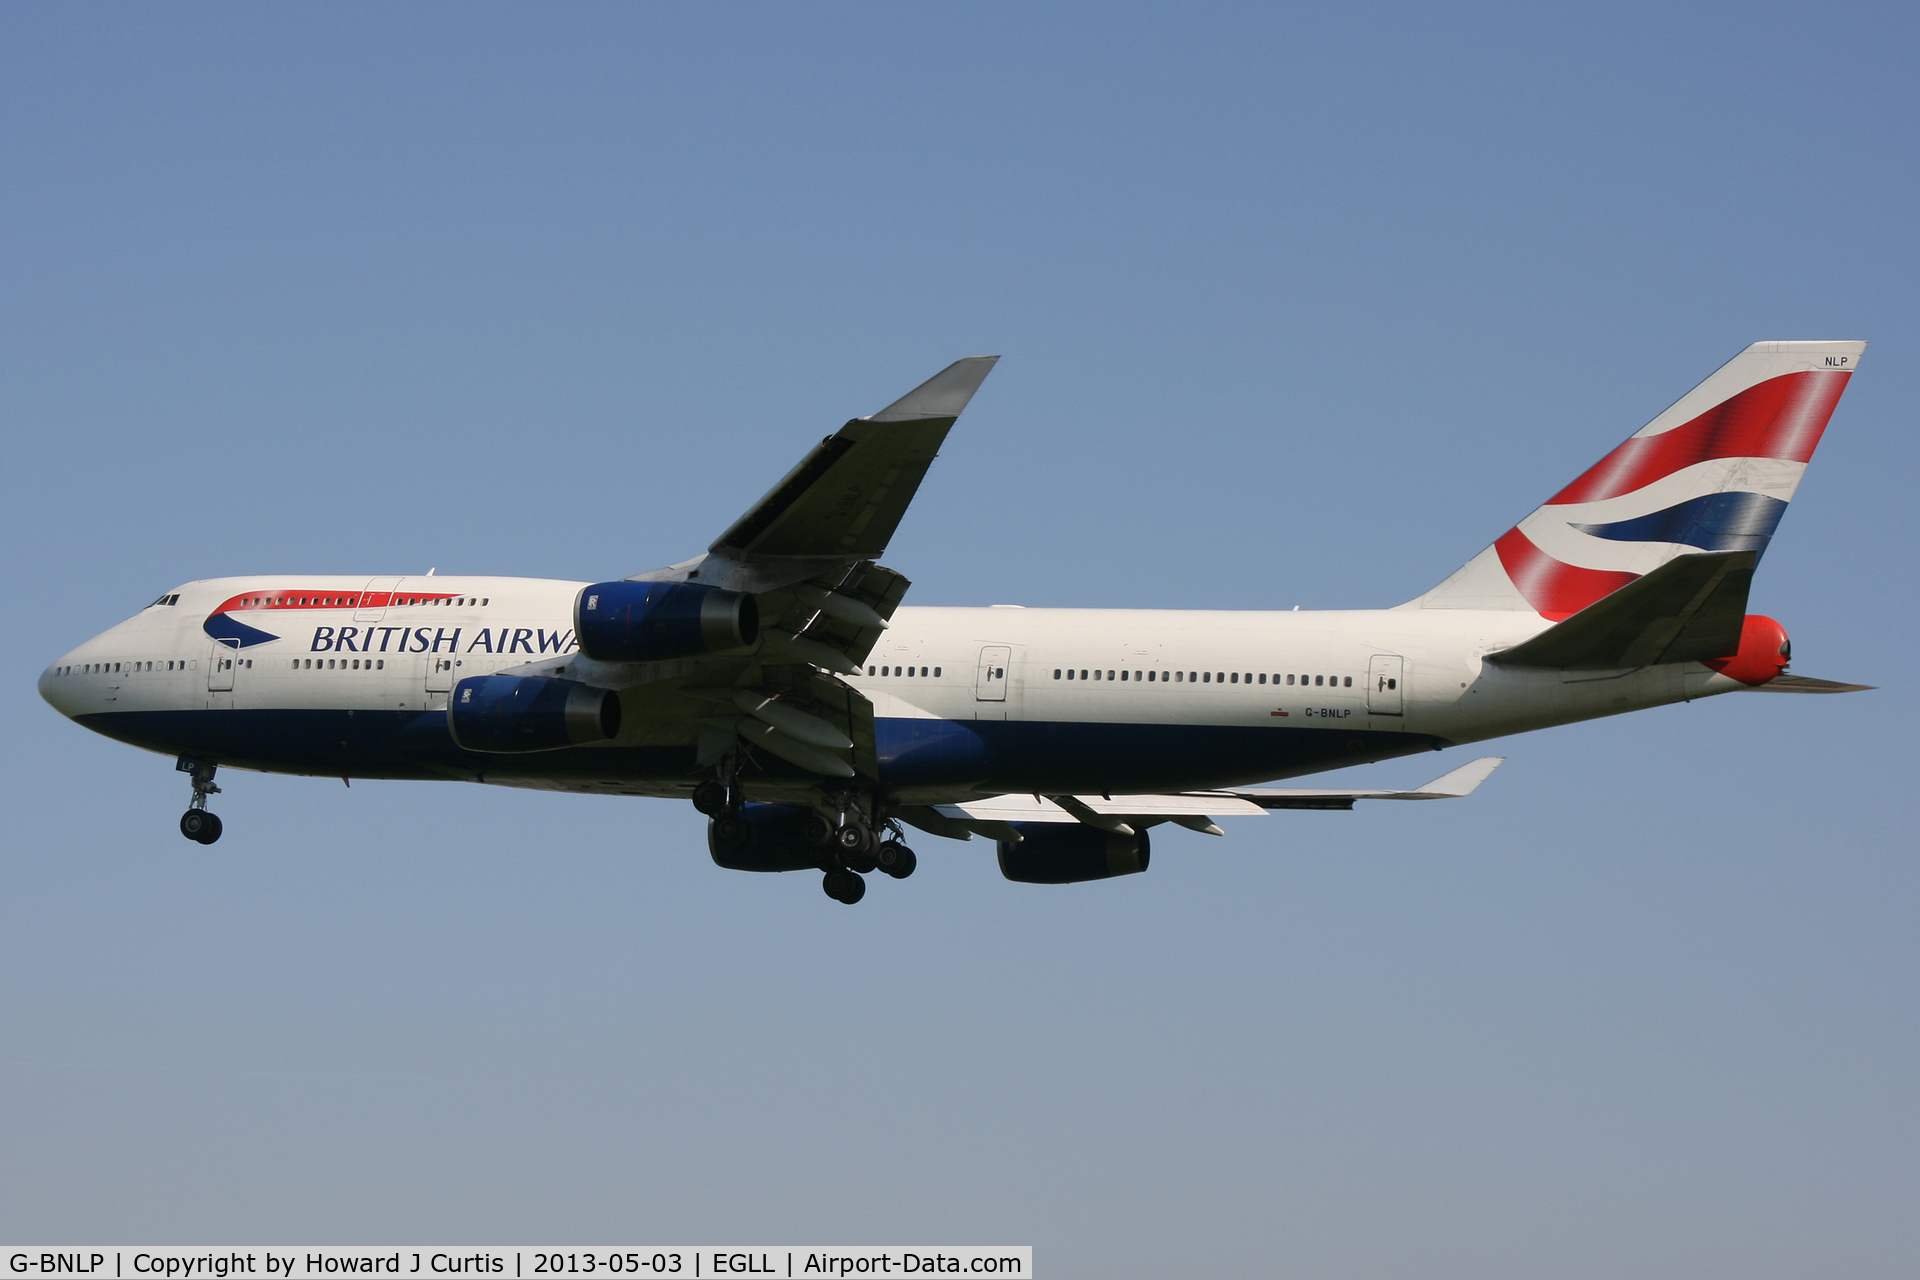 G-BNLP, 1990 Boeing 747-436 C/N 24058, British Airways, on approach to runway 27L.